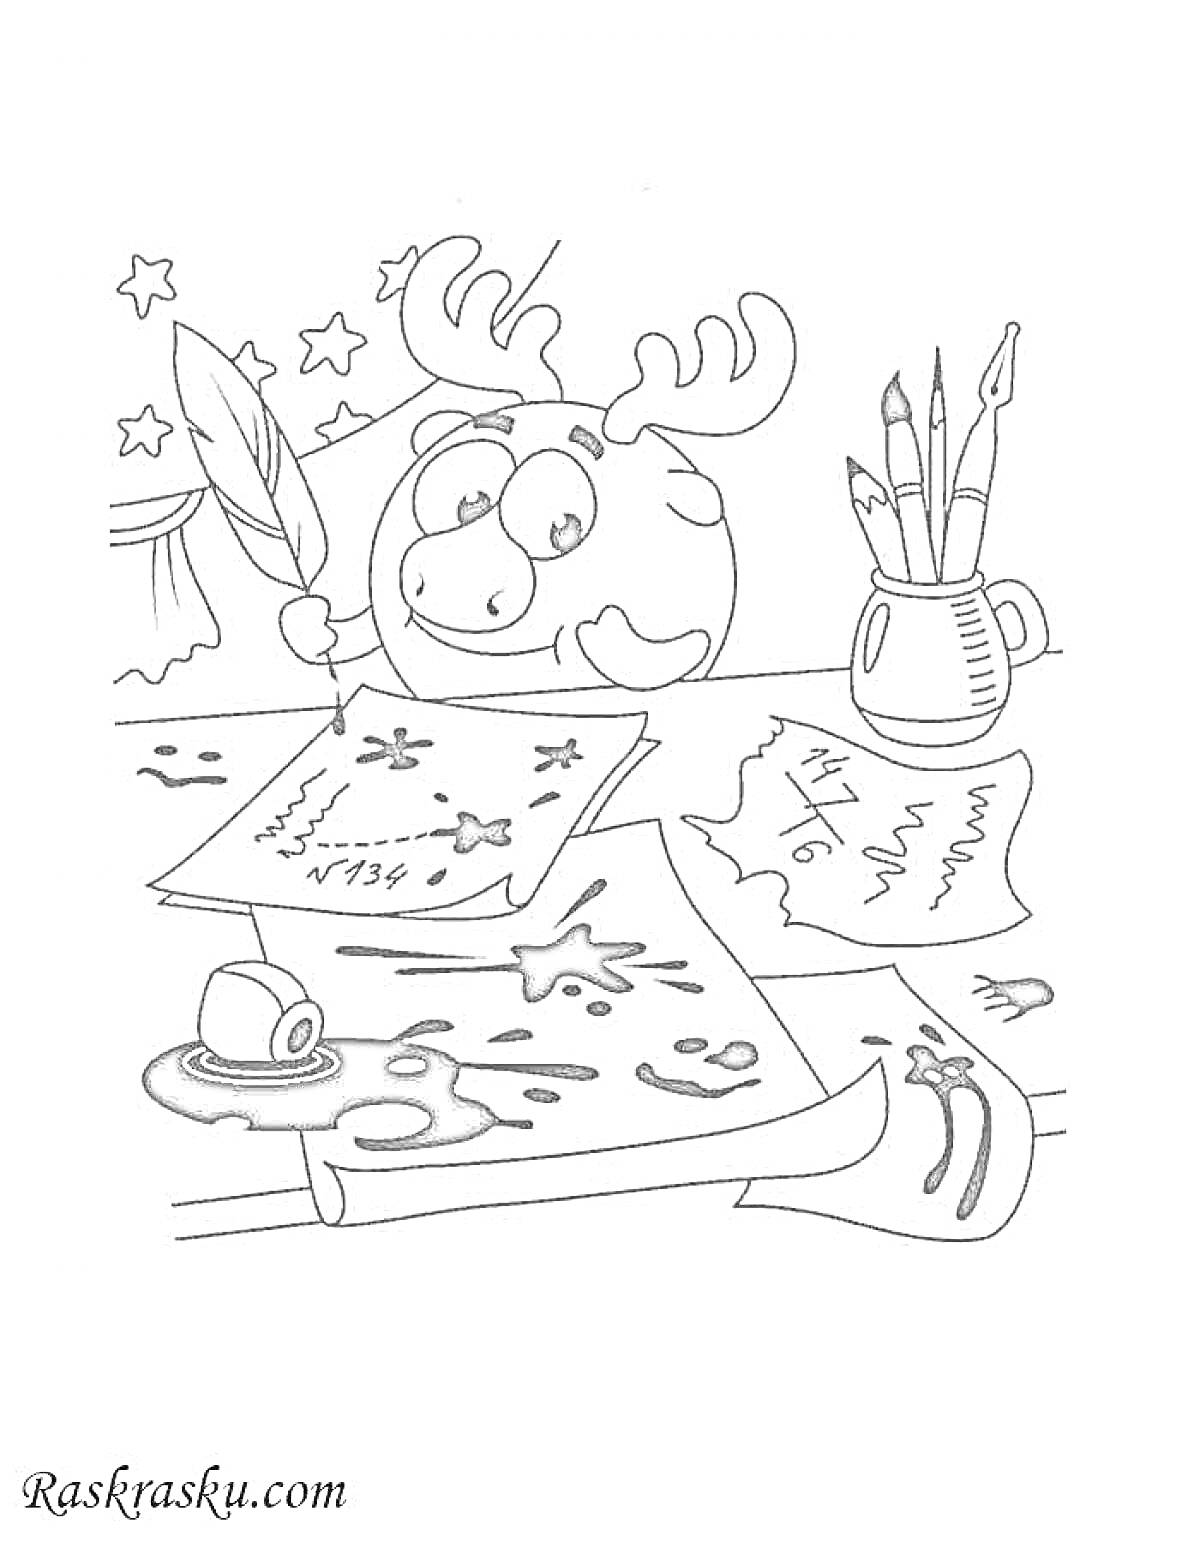 На раскраске изображено: Лосяш, Письменный стол, Бумага, Чернила, Кисти, Звезды, Комические персонажи